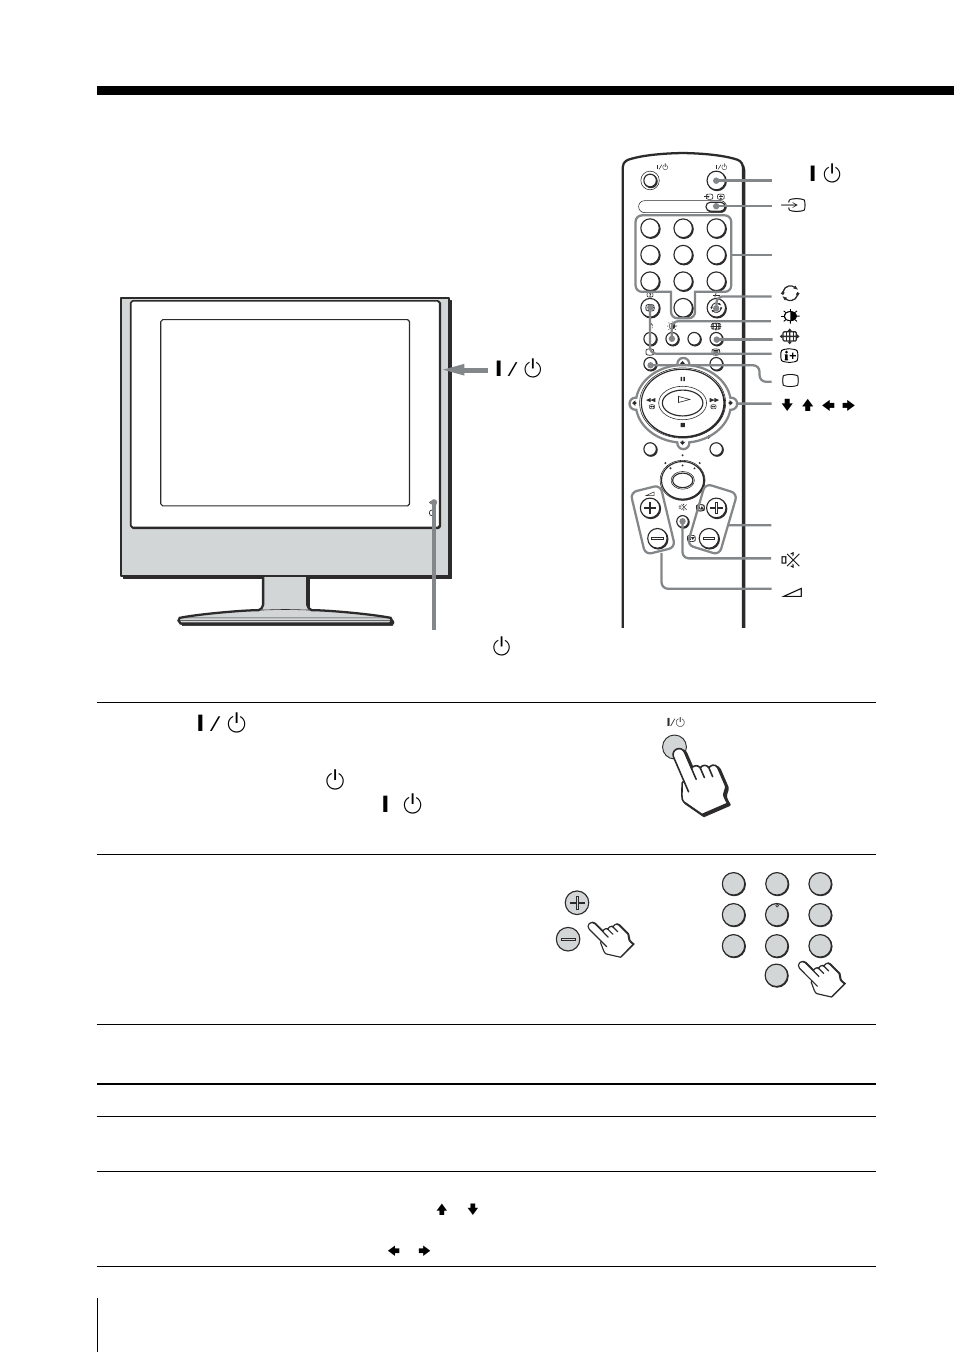 Visualización del televisor, Tareas adicionales | Sony KLV-15SR1 Manual del usuario | Página 12 / 88